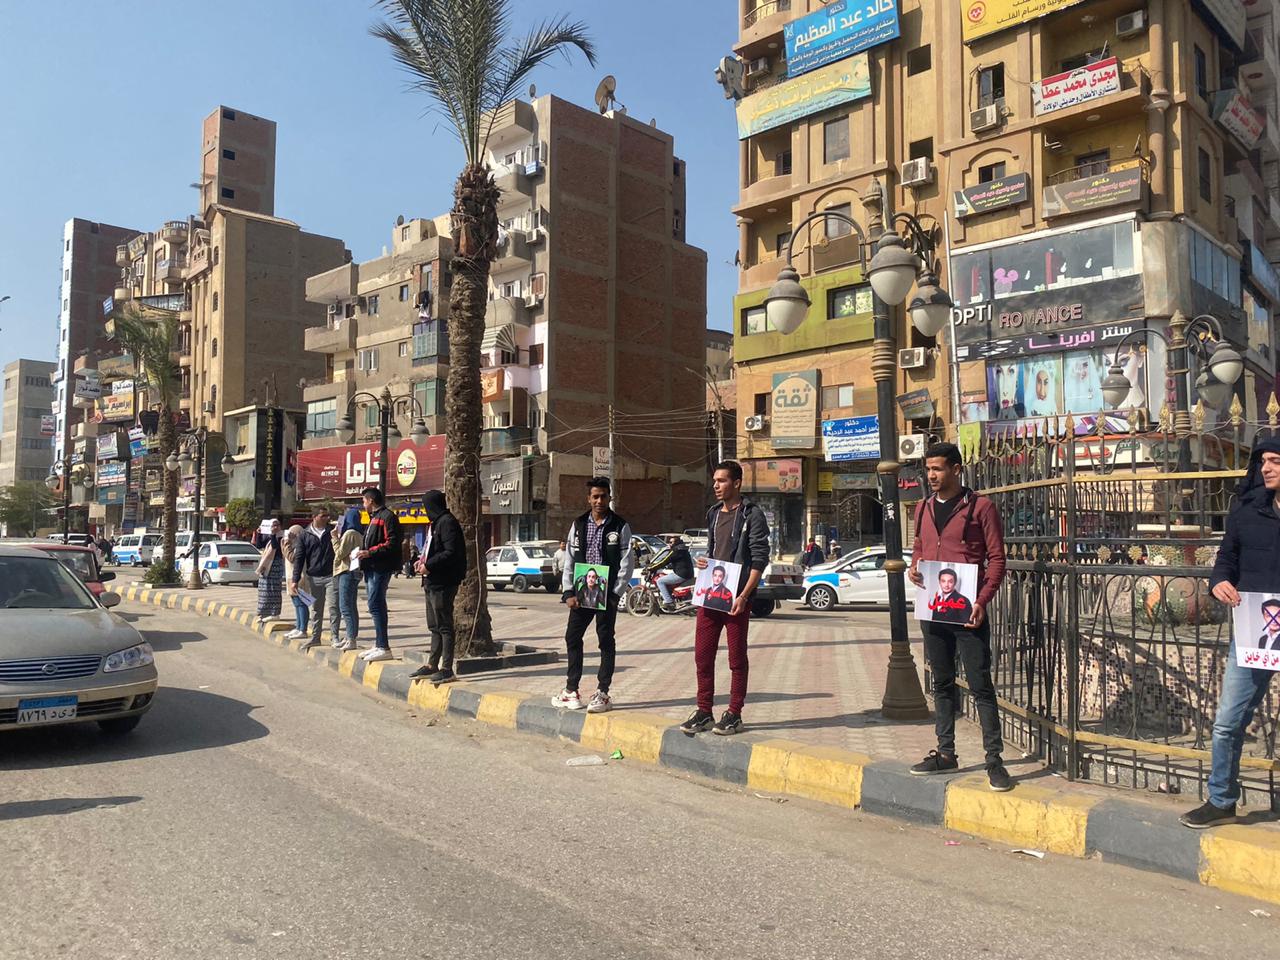   شاهد|| بالصوت والصورة كيف سخر المصريون من المقاول الهارب ودعواته للمصريين بالخروج على الدولة